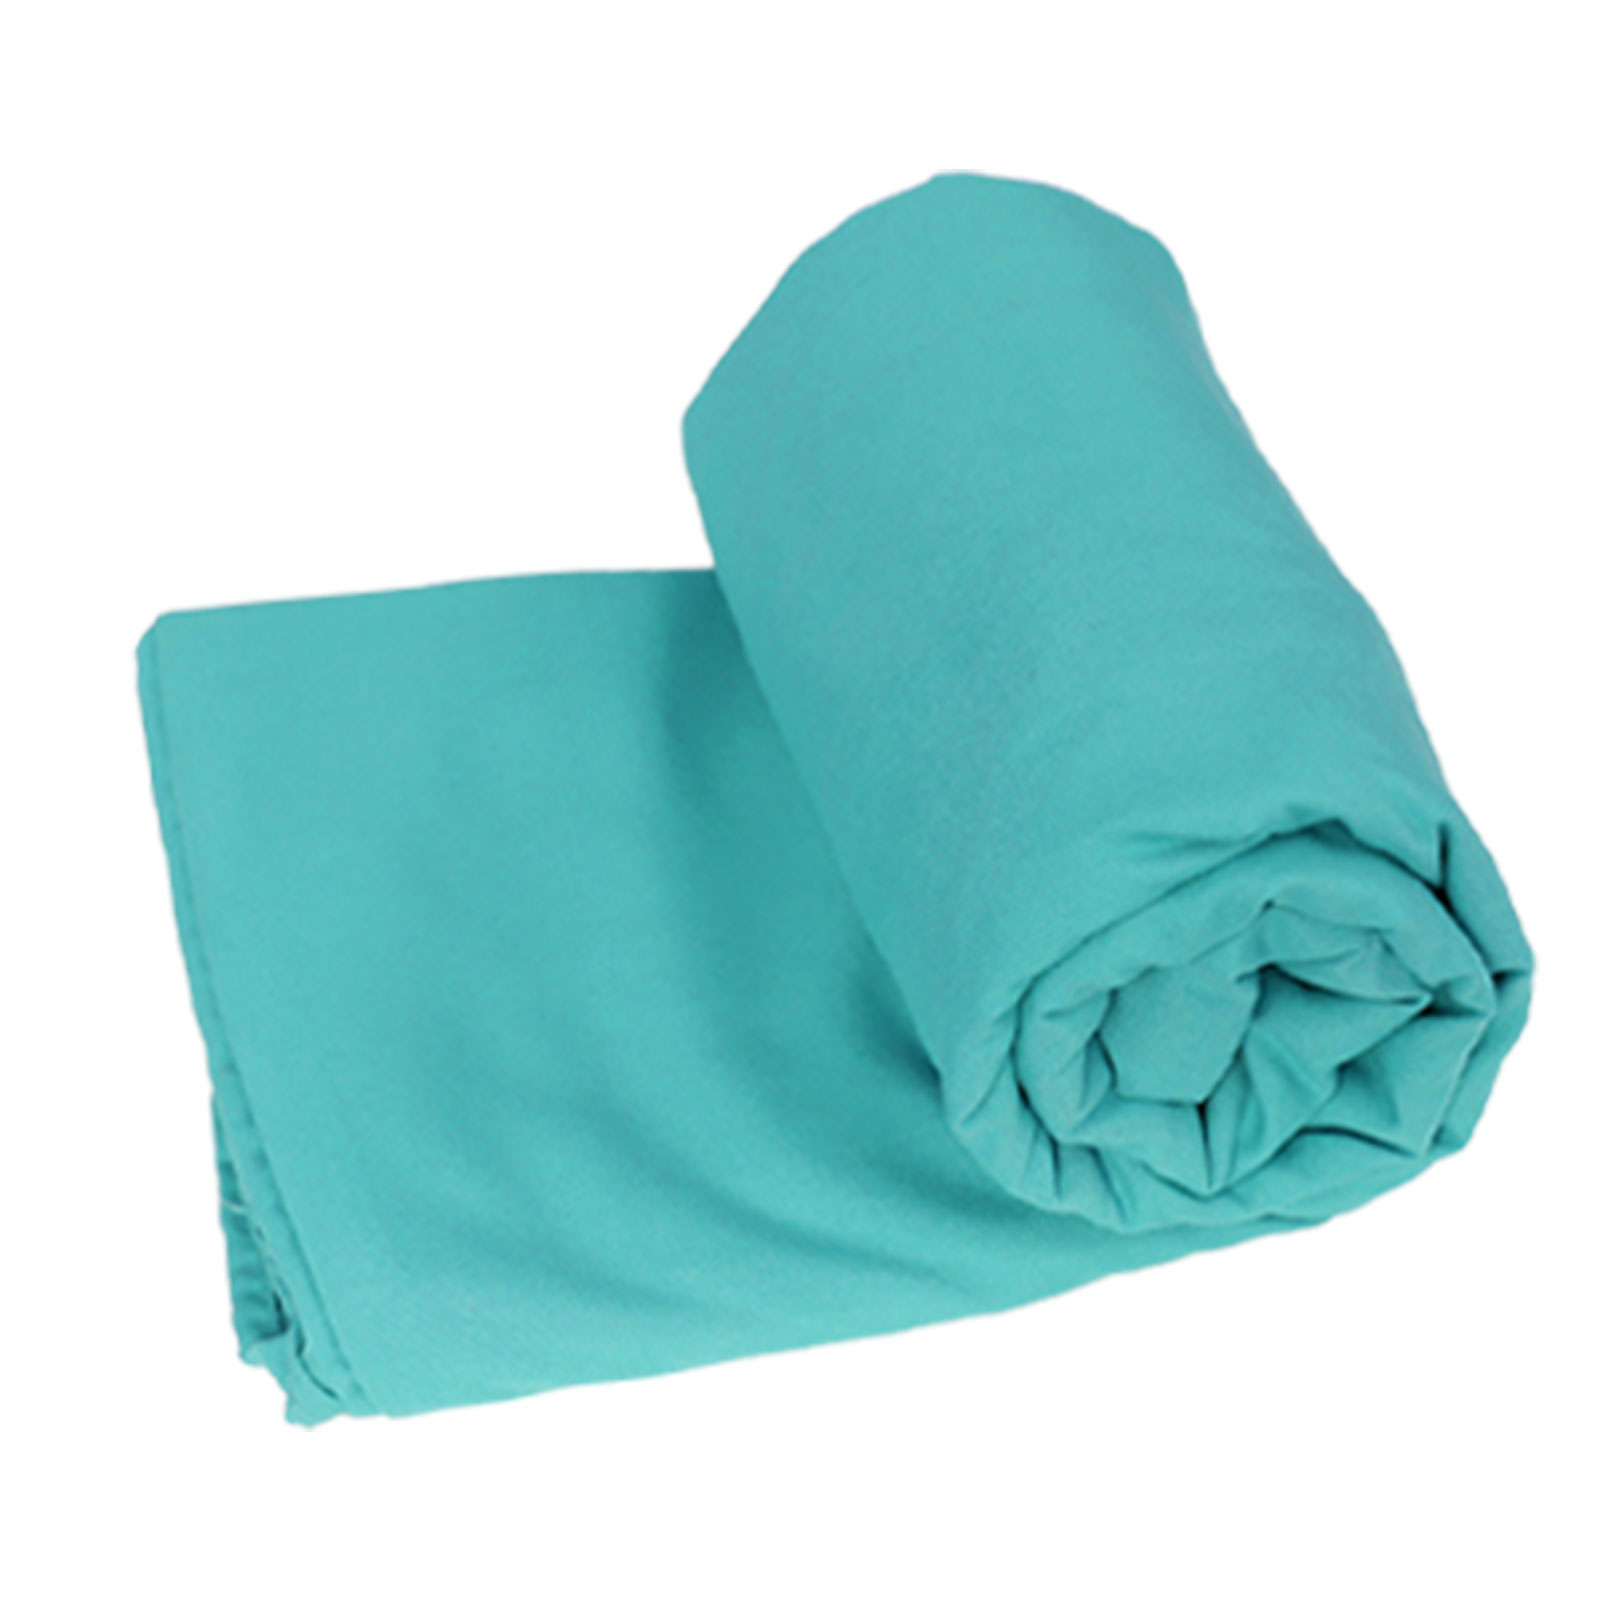 寝袋 インナーシュラフ 軽量 夏 薄手 インナーシーツ 封筒型 丸洗い可能 コンパクト 収納 シーツ...